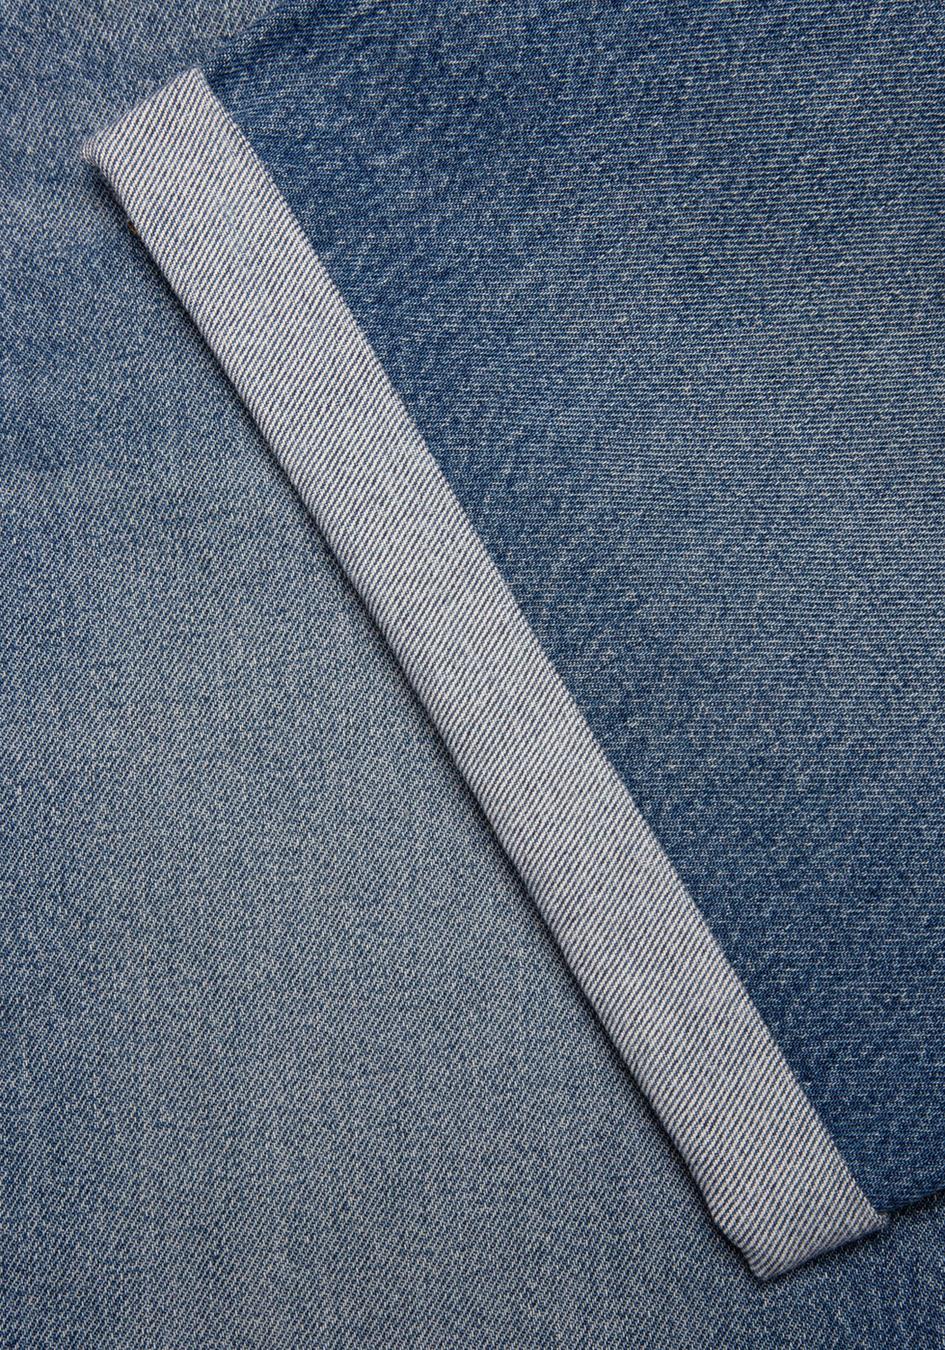 Jeans-Shorts Josh Denim Shorts Blue Haze